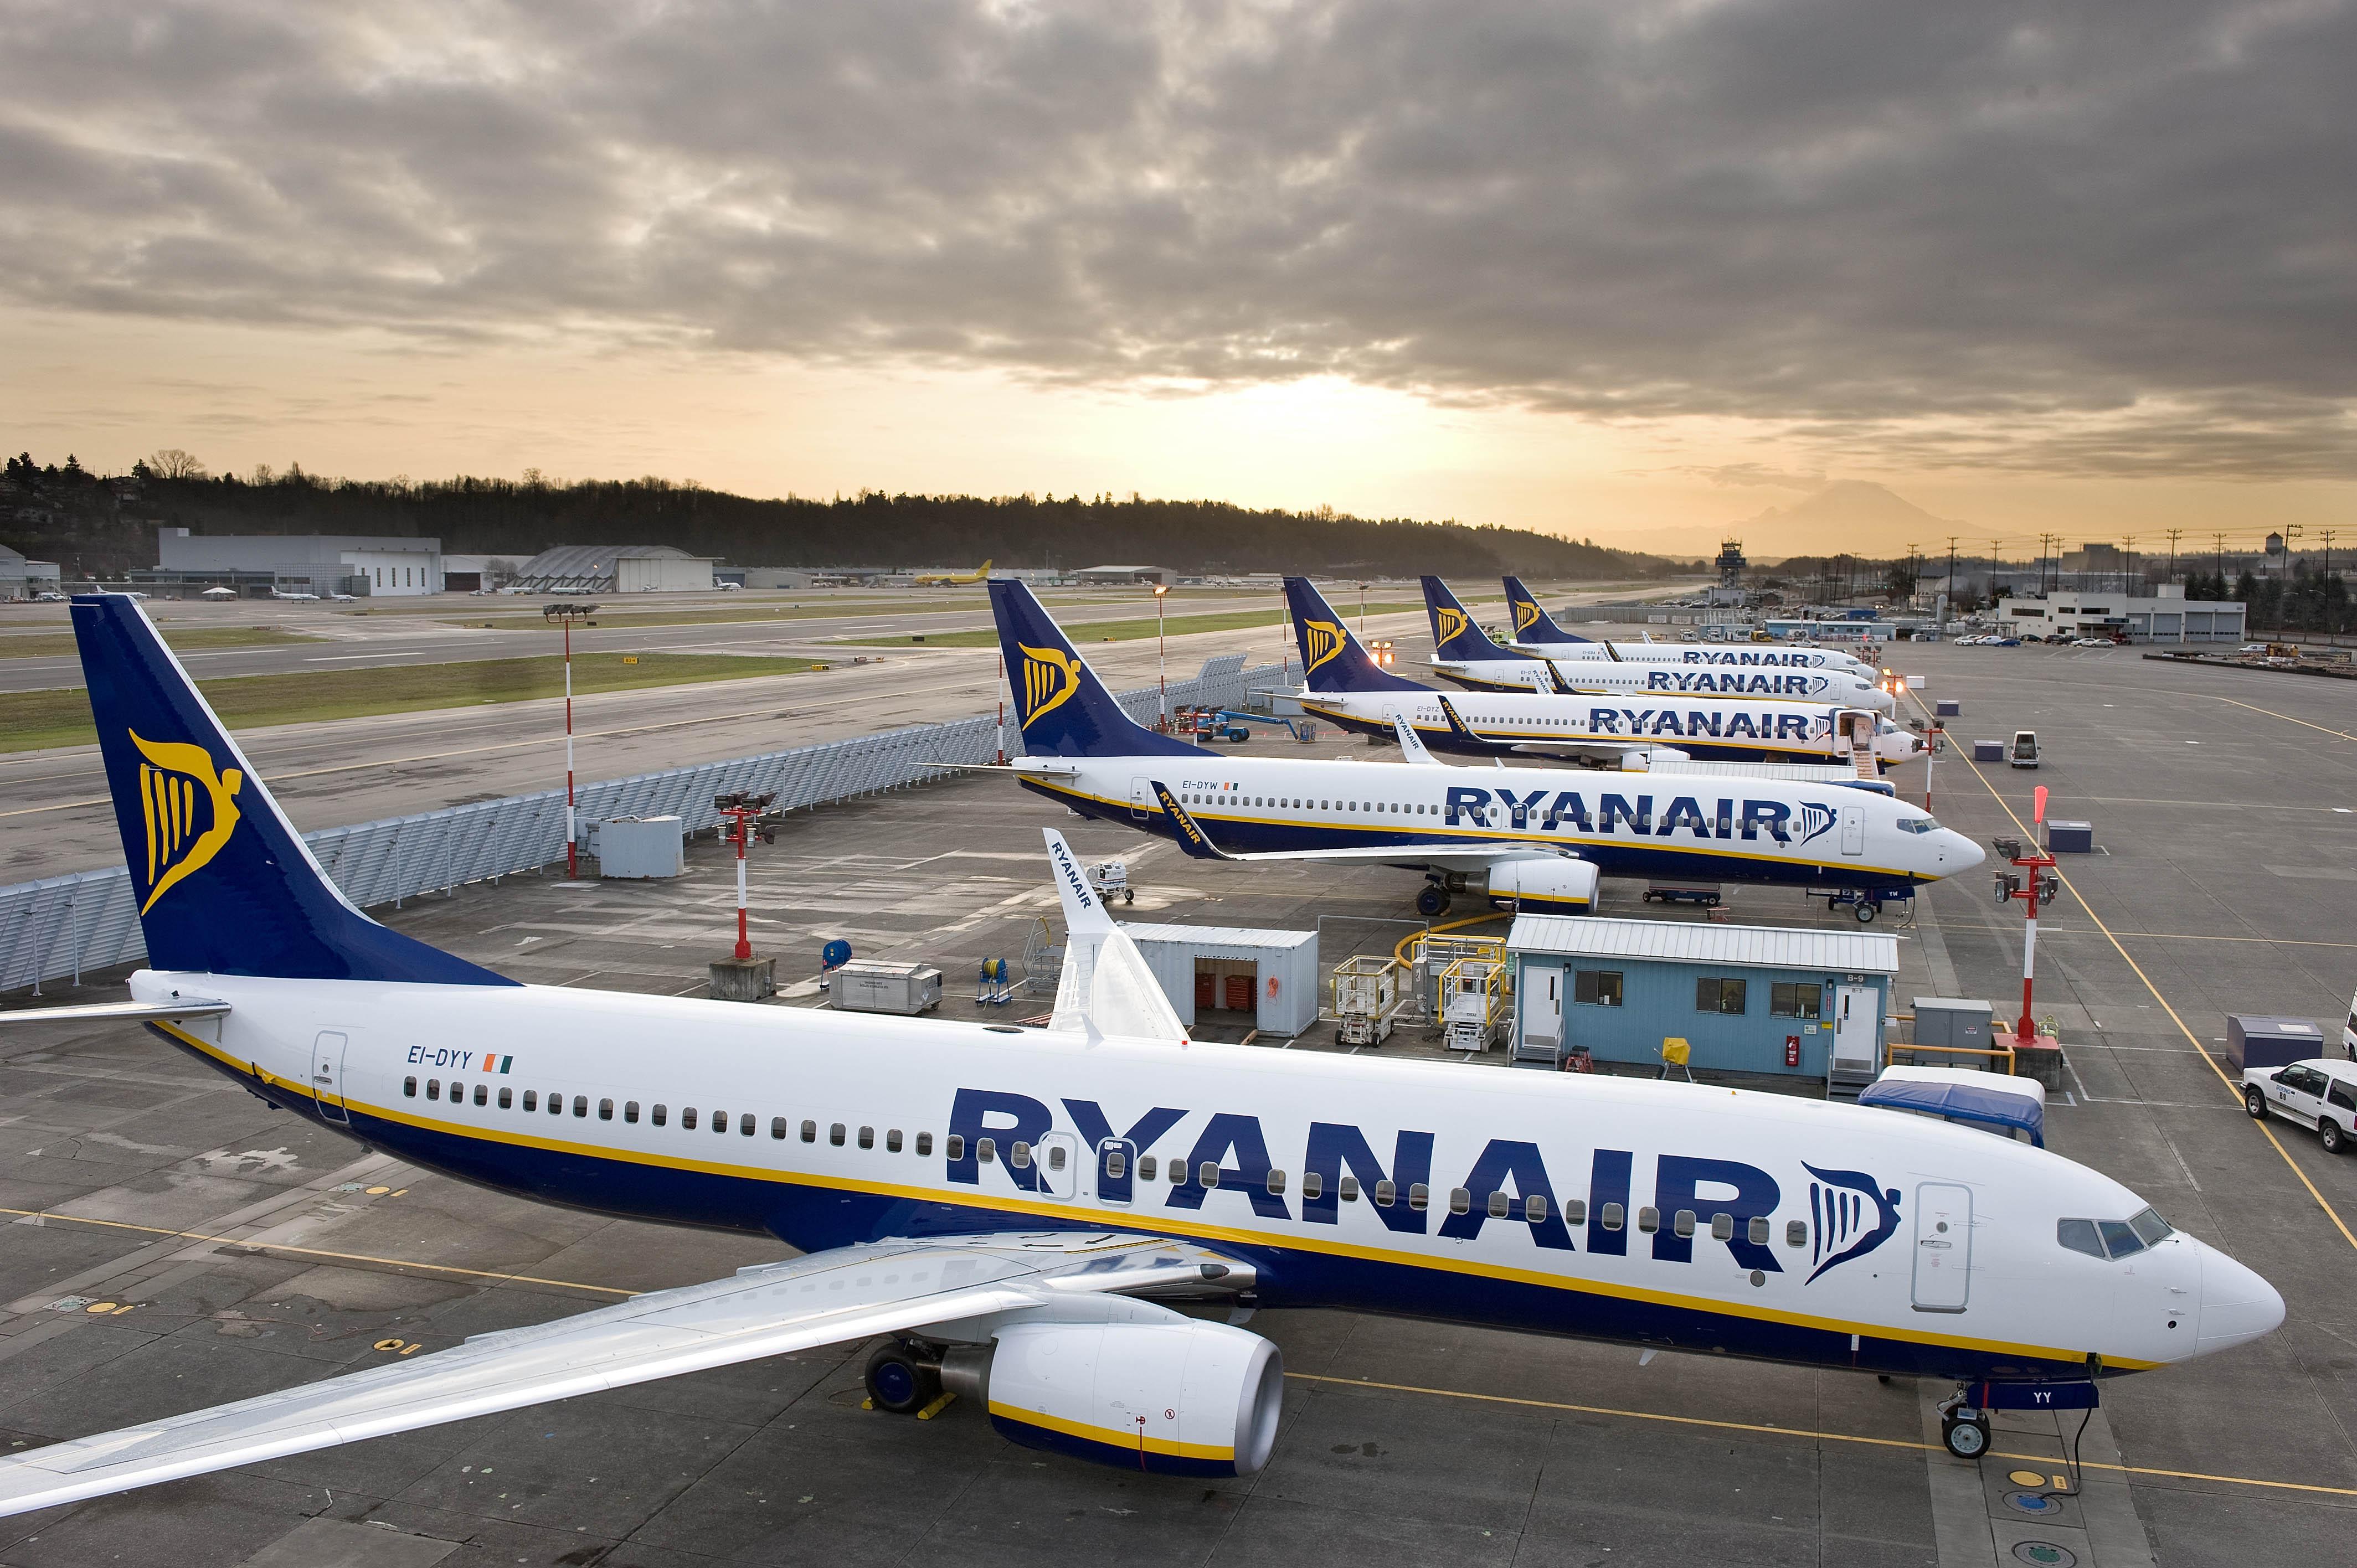 Transport aérien : Ryanair projette de doubler son trafic annuel au Maroc à horizon 2027